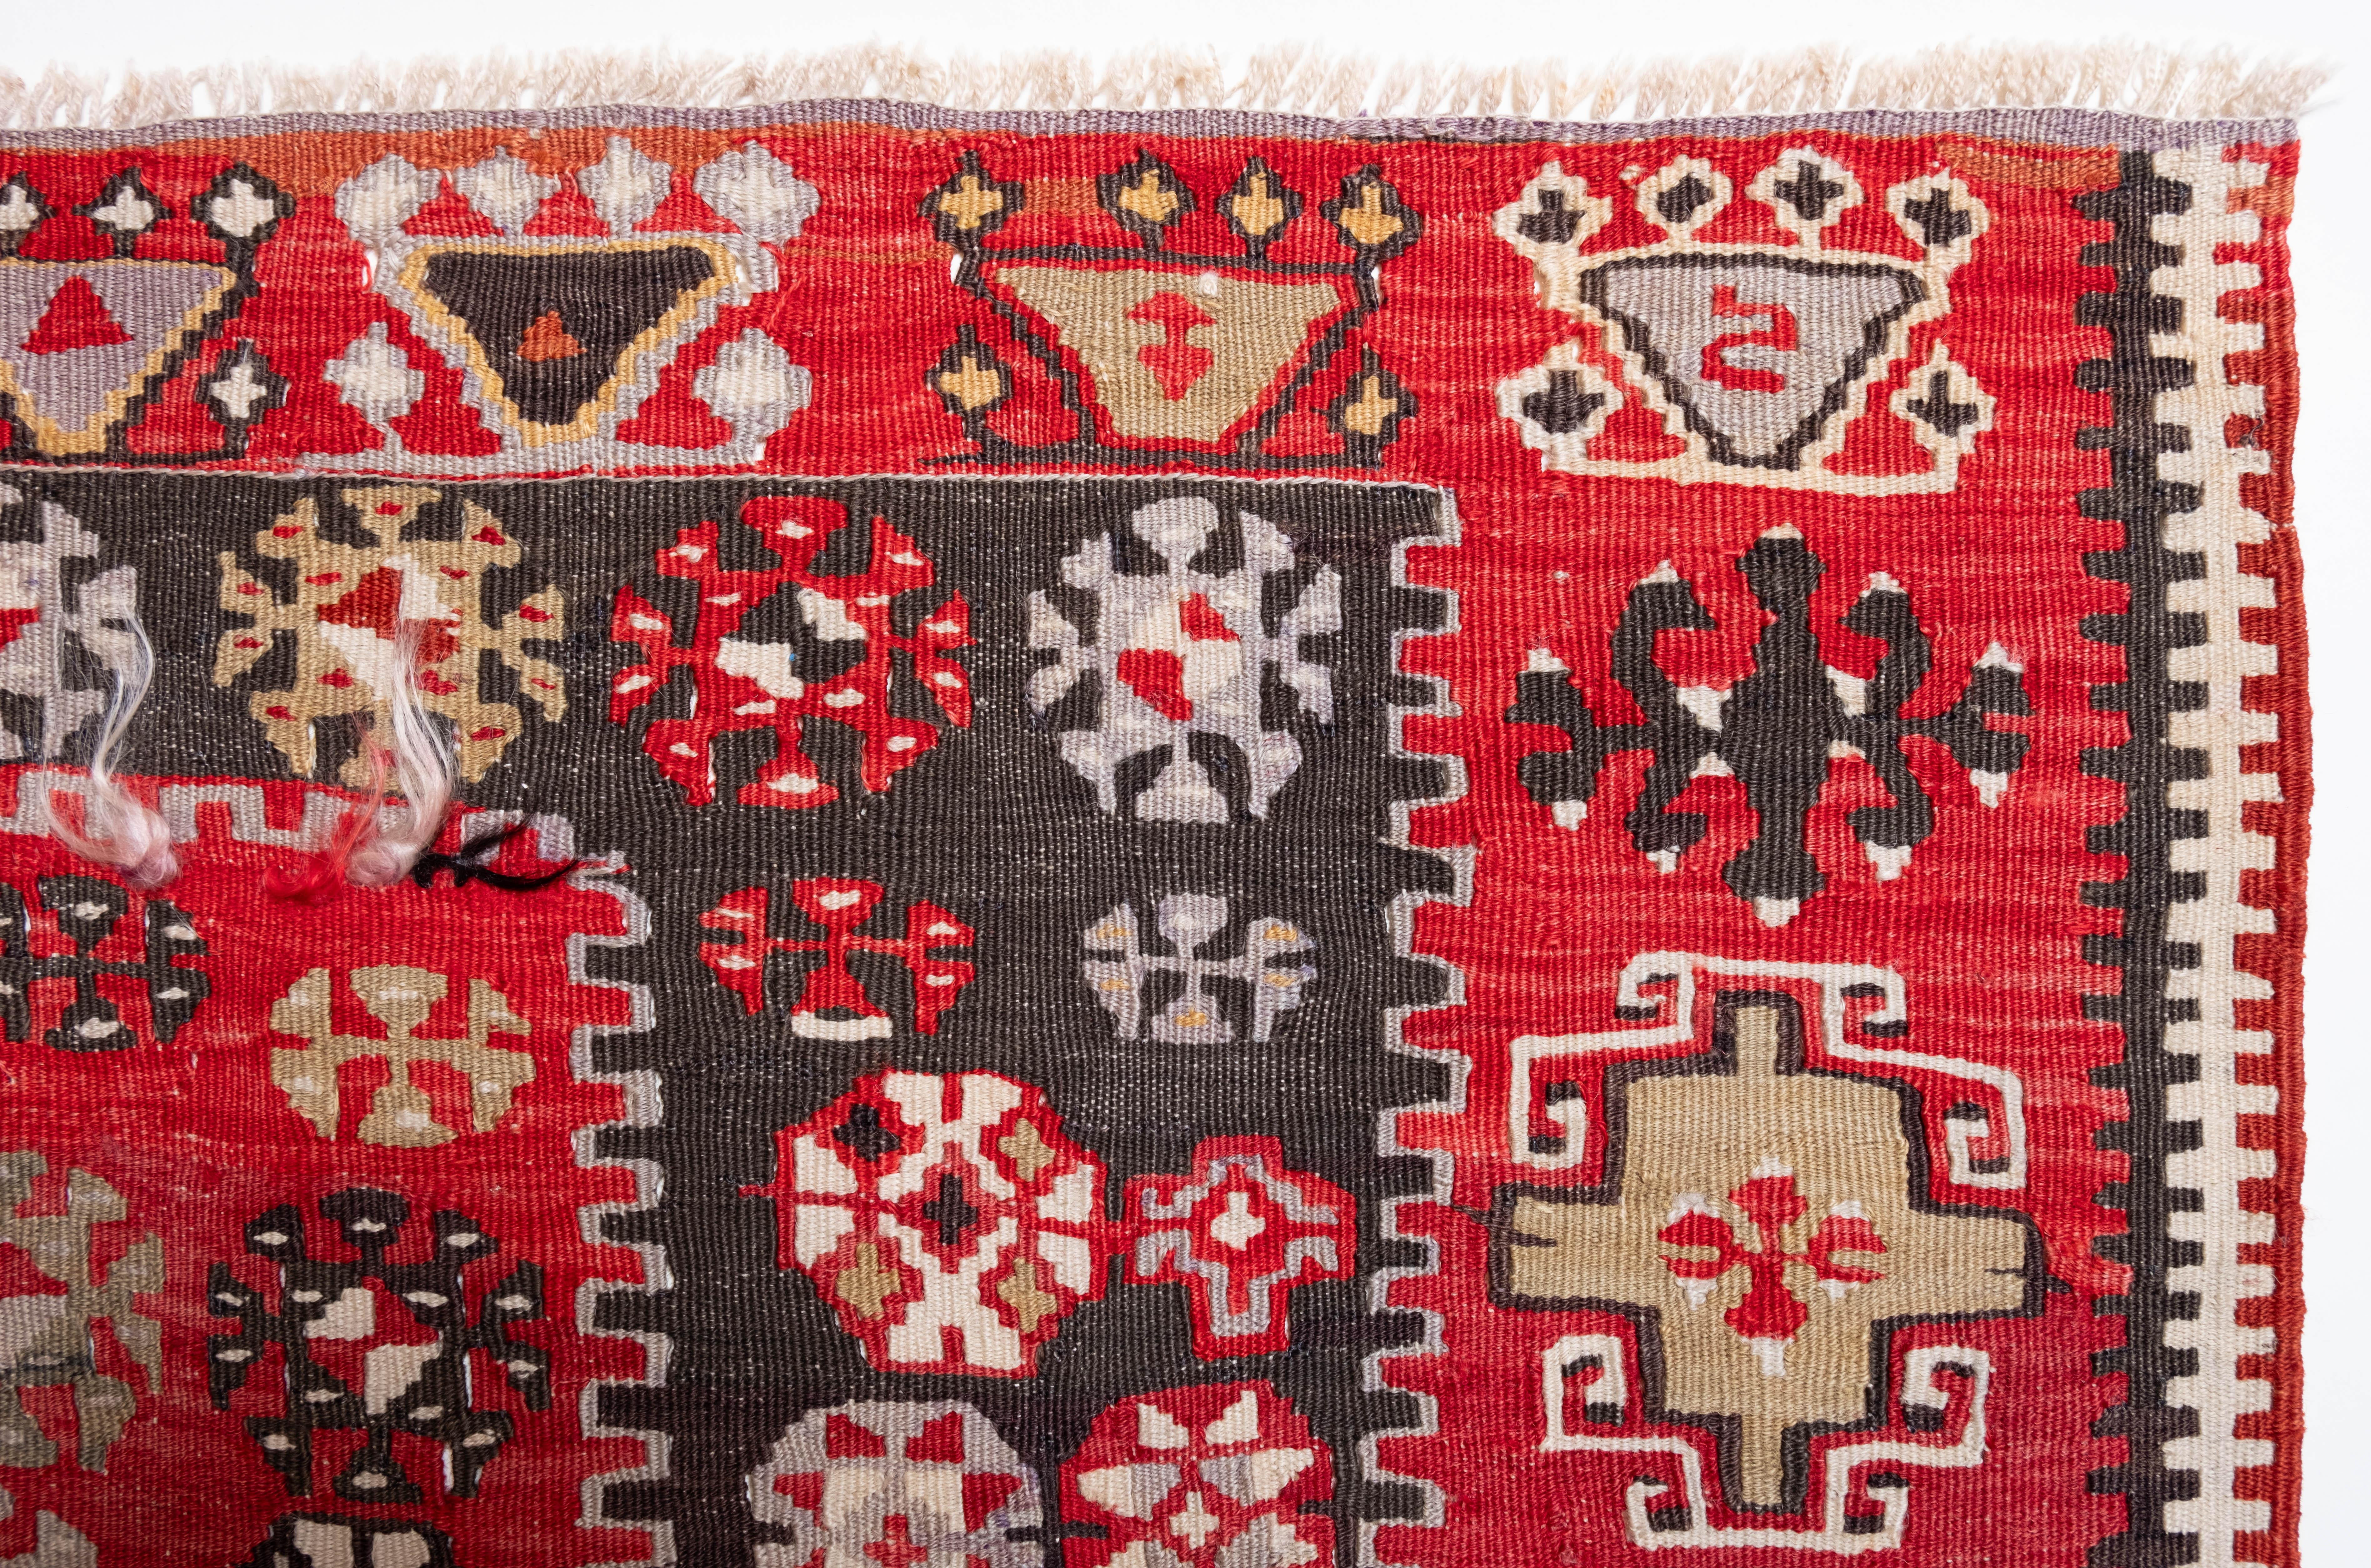 Il s'agit d'un Kilim ancien d'Anatolie centrale provenant de la région de Gomurgen, Kayseri, dont la composition des couleurs est rare et magnifique.

Ce kilim antique de grande collection présente de merveilleuses couleurs et textures